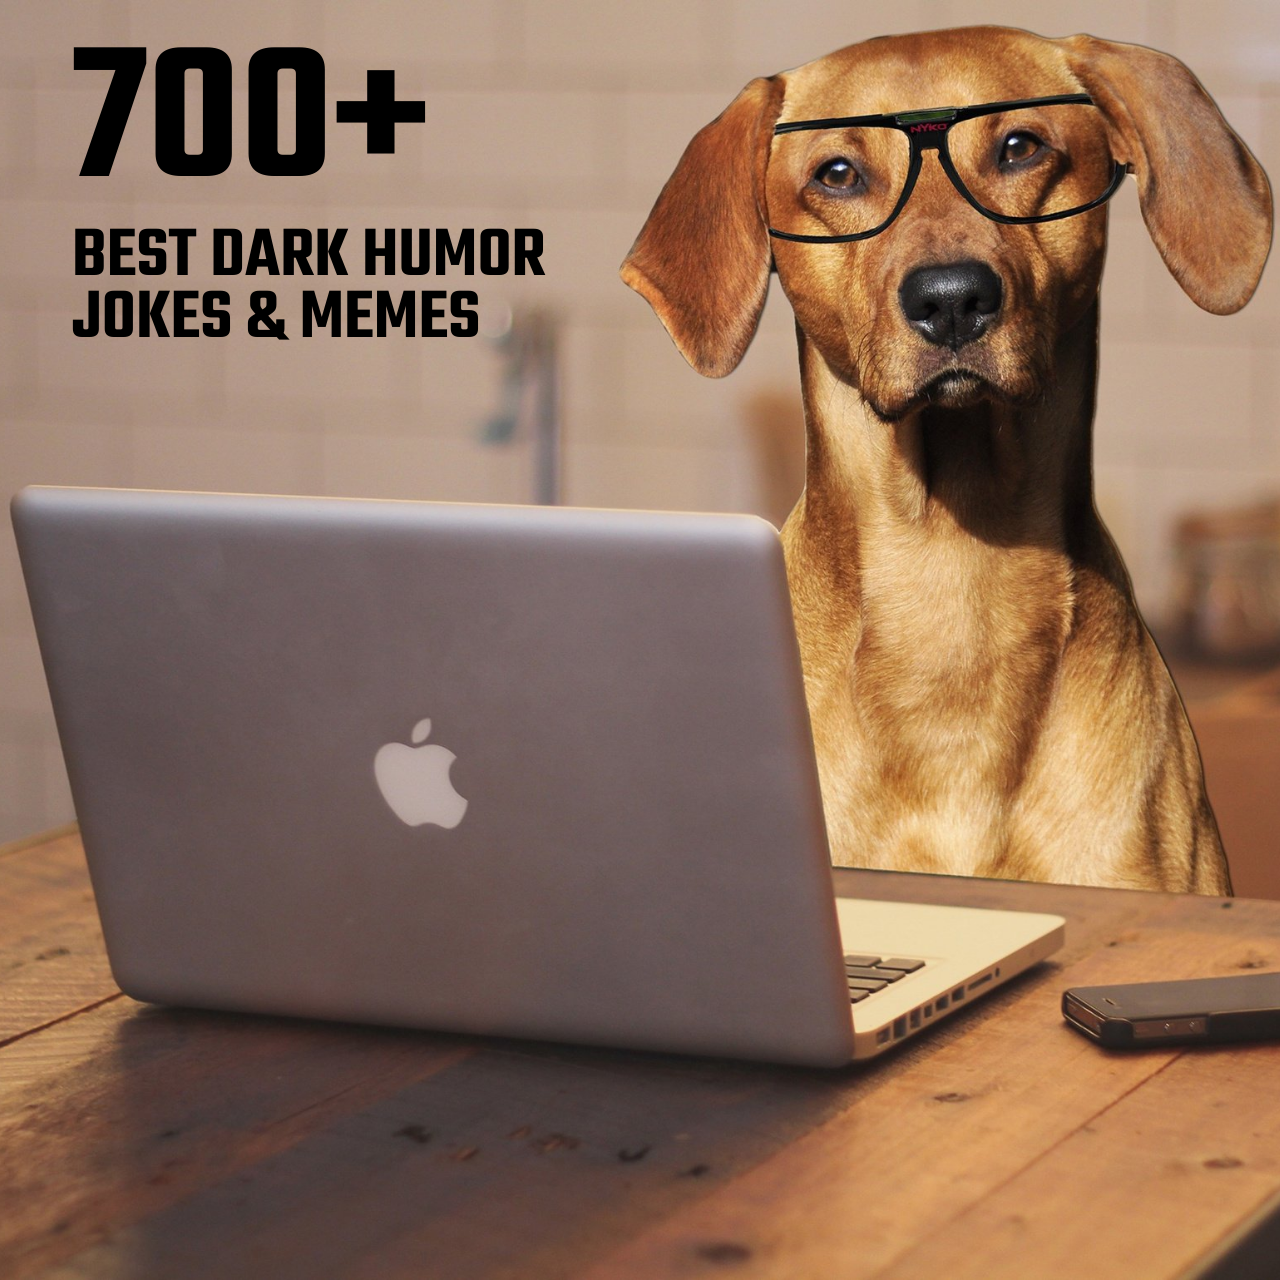 700+ من أفضل النكات والمضحكات المظلمة المظلمة لتجعلك تضحك بفرح